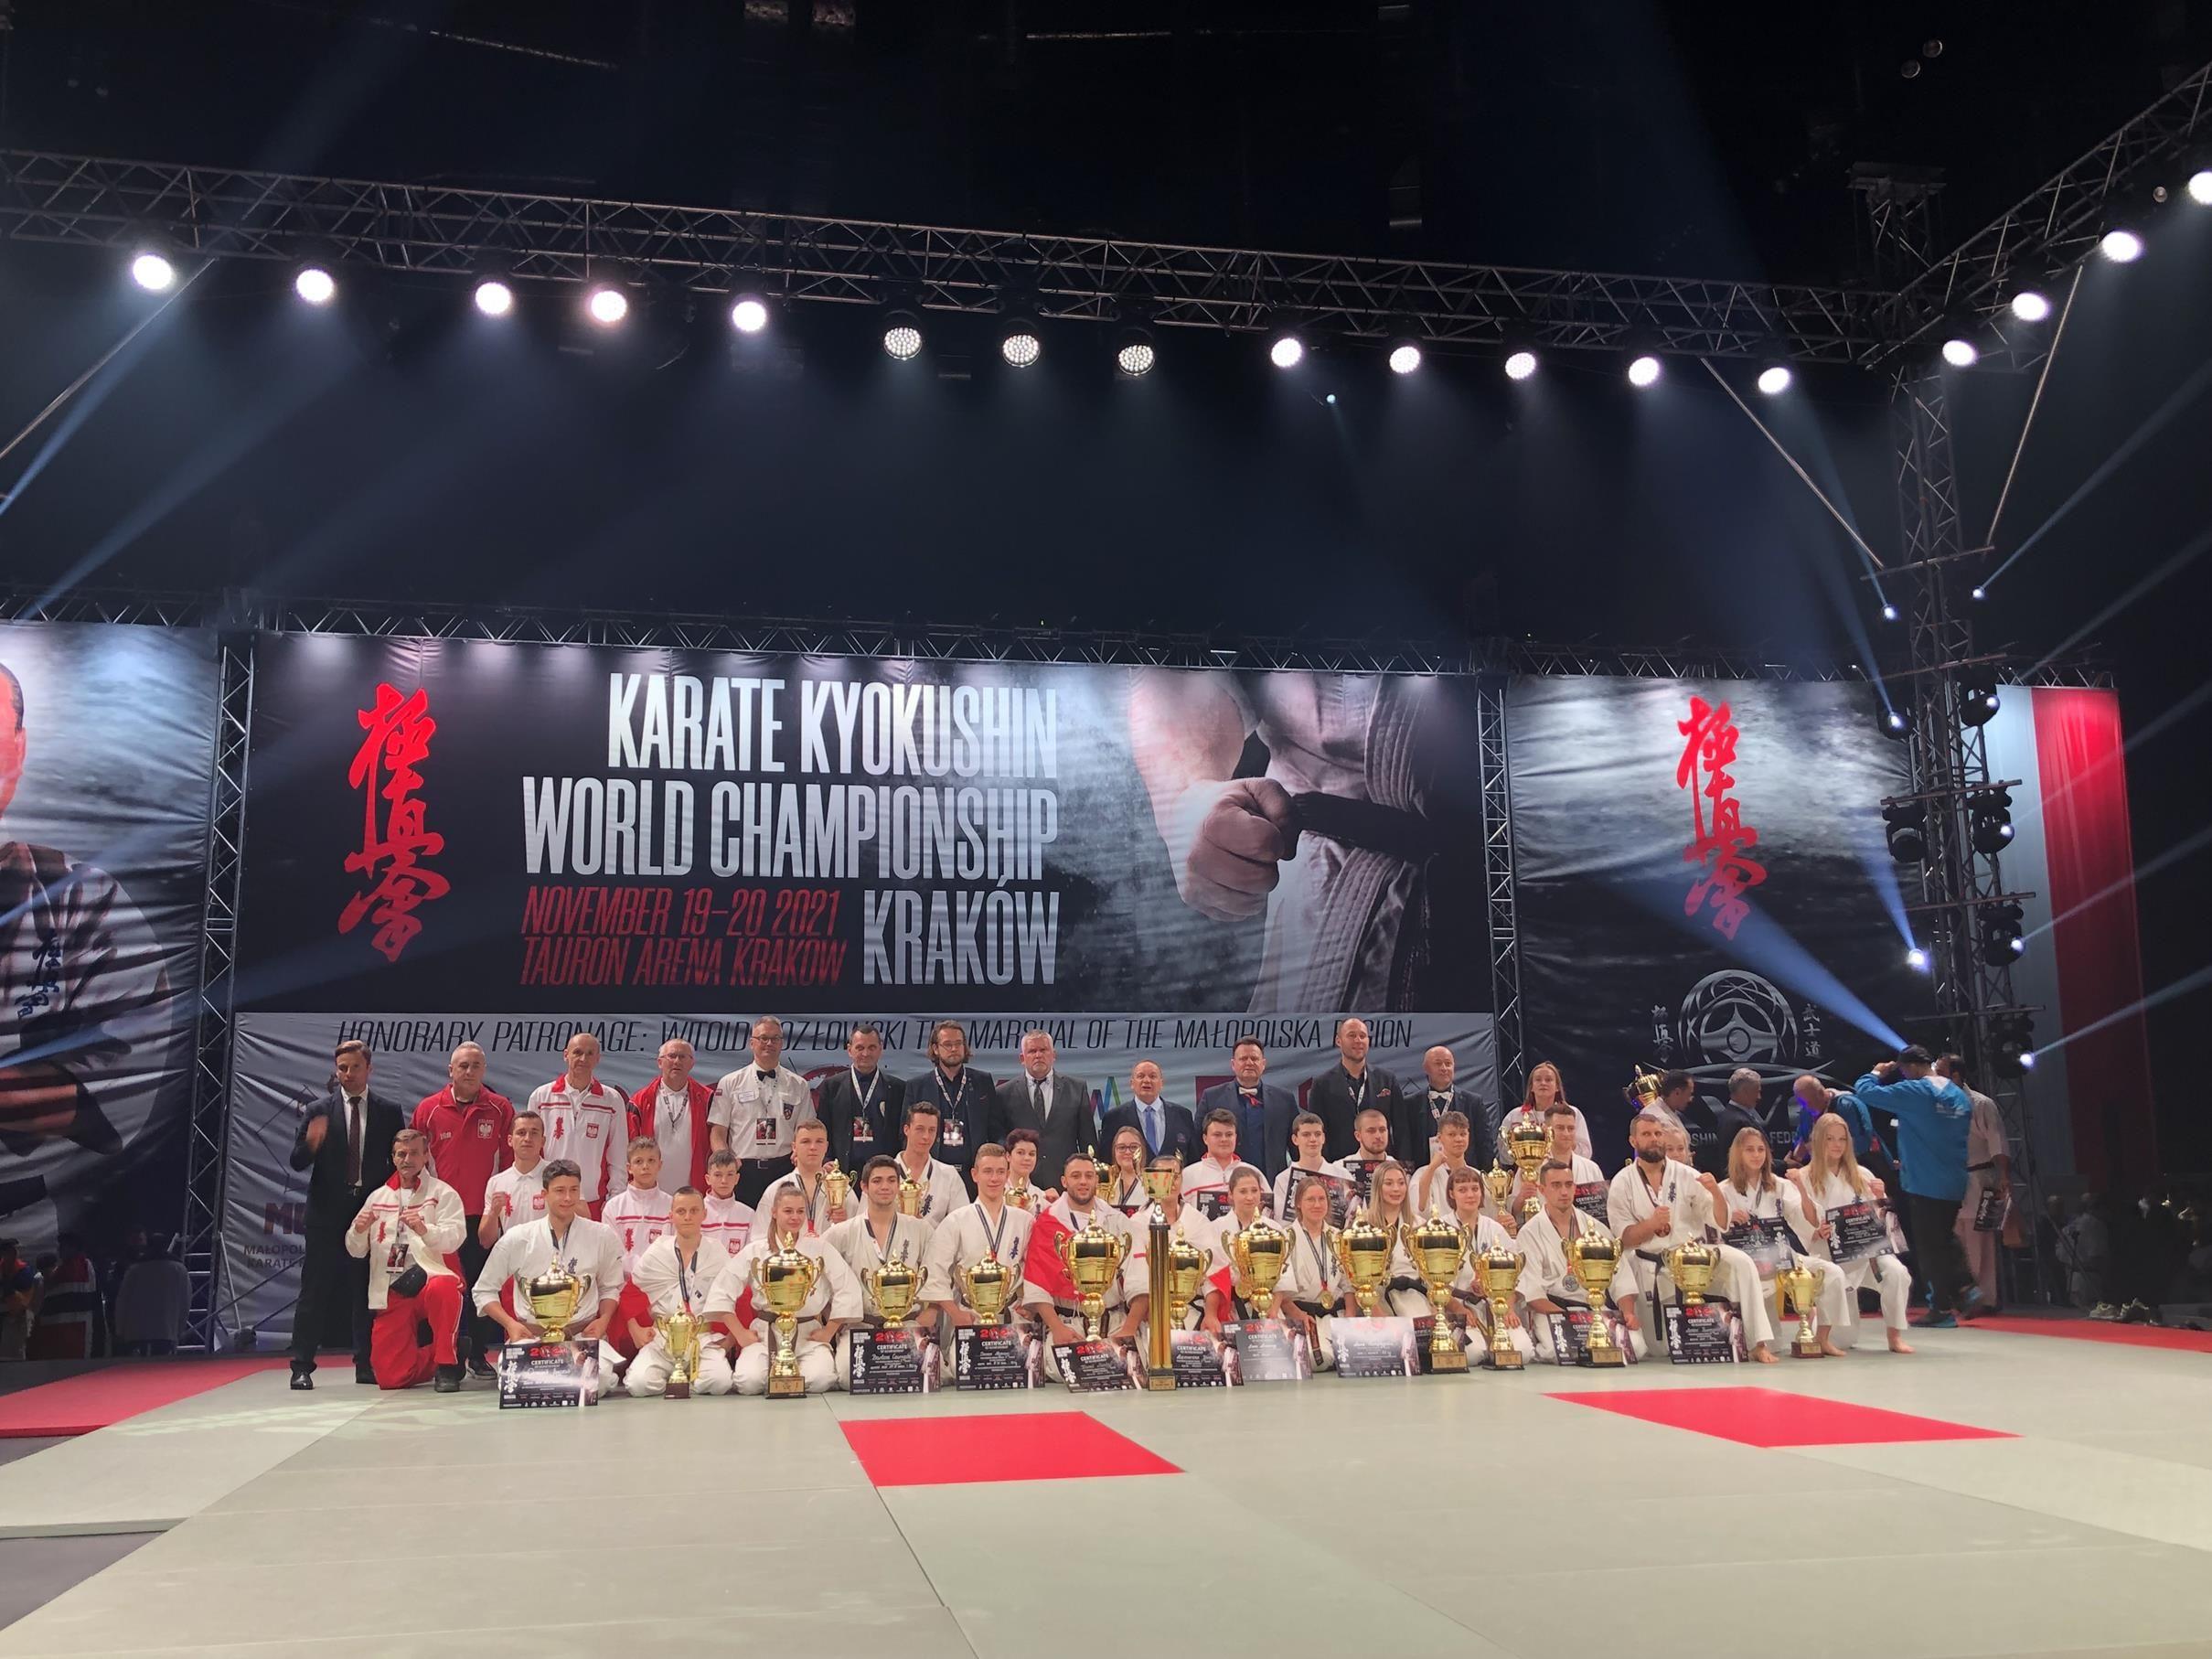 Zdj. nr. 7. Mistrzostw Świata w Karate Kyokushin - 19-20.11.2021 r., Kraków